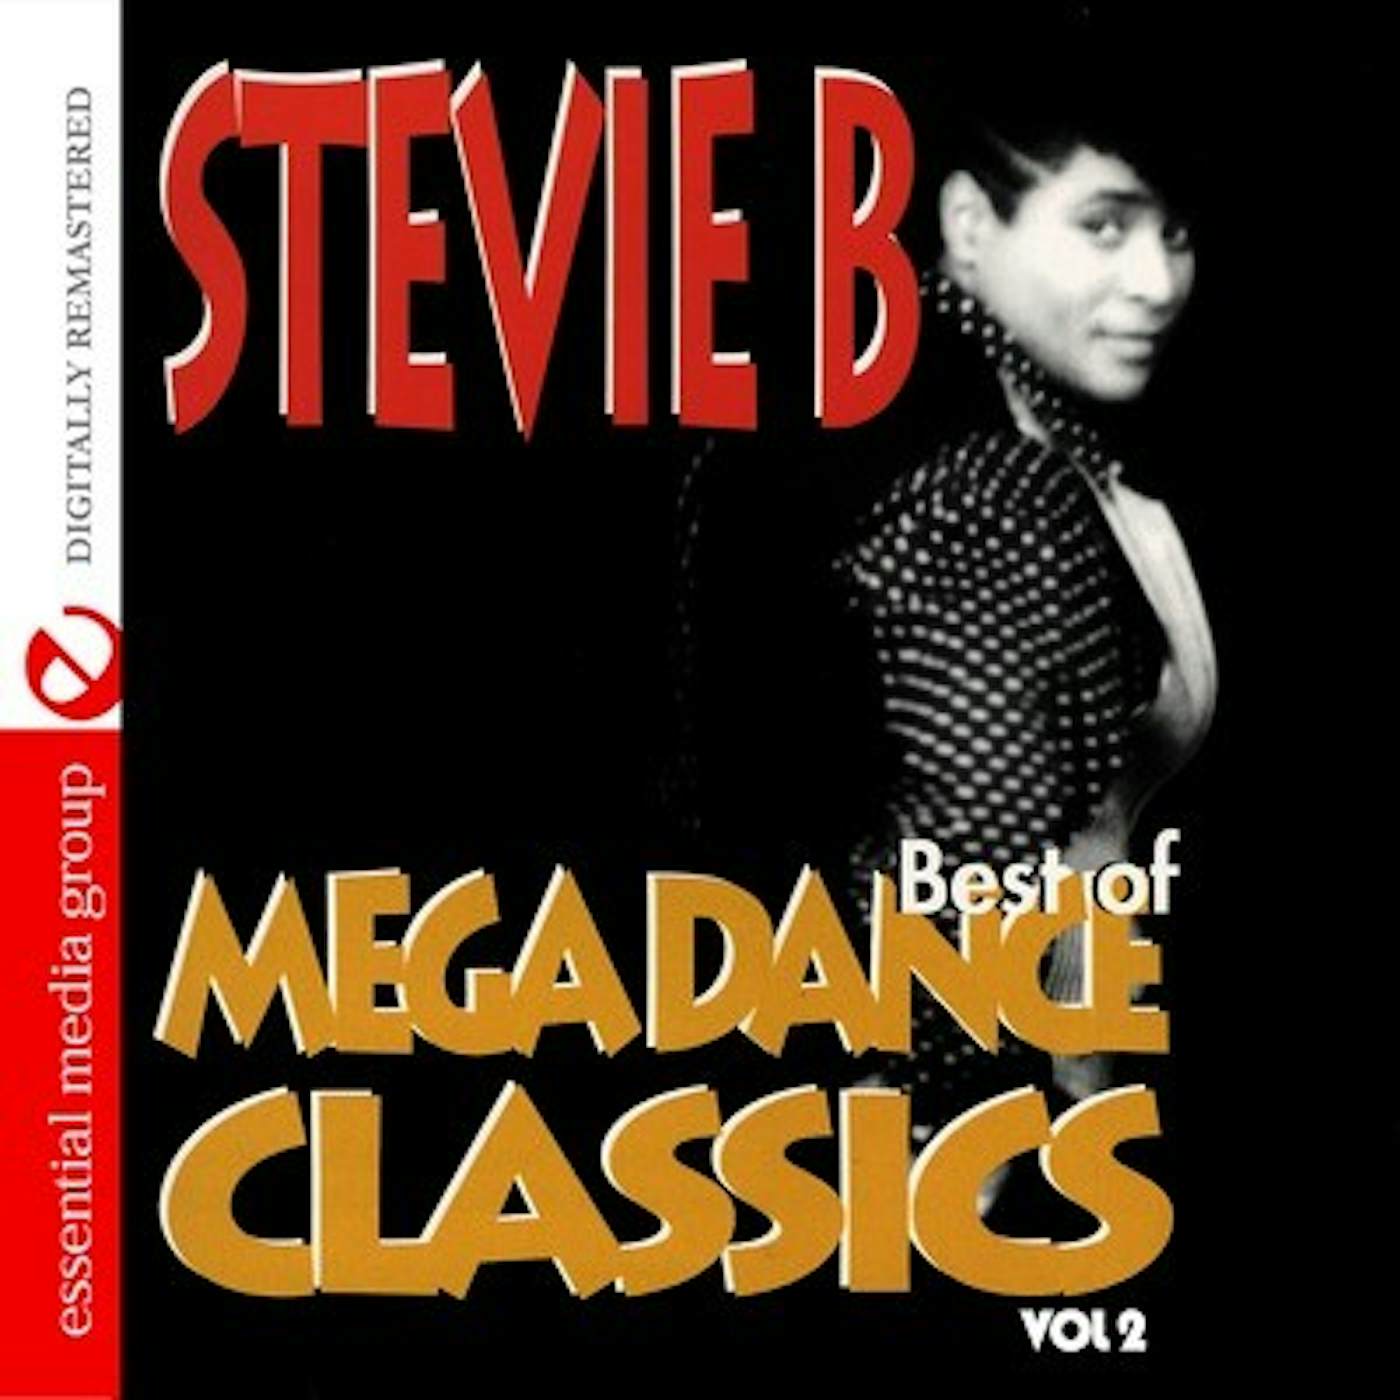 Stevie B MEGA DANCE CLASSICS VOL. 2 CD